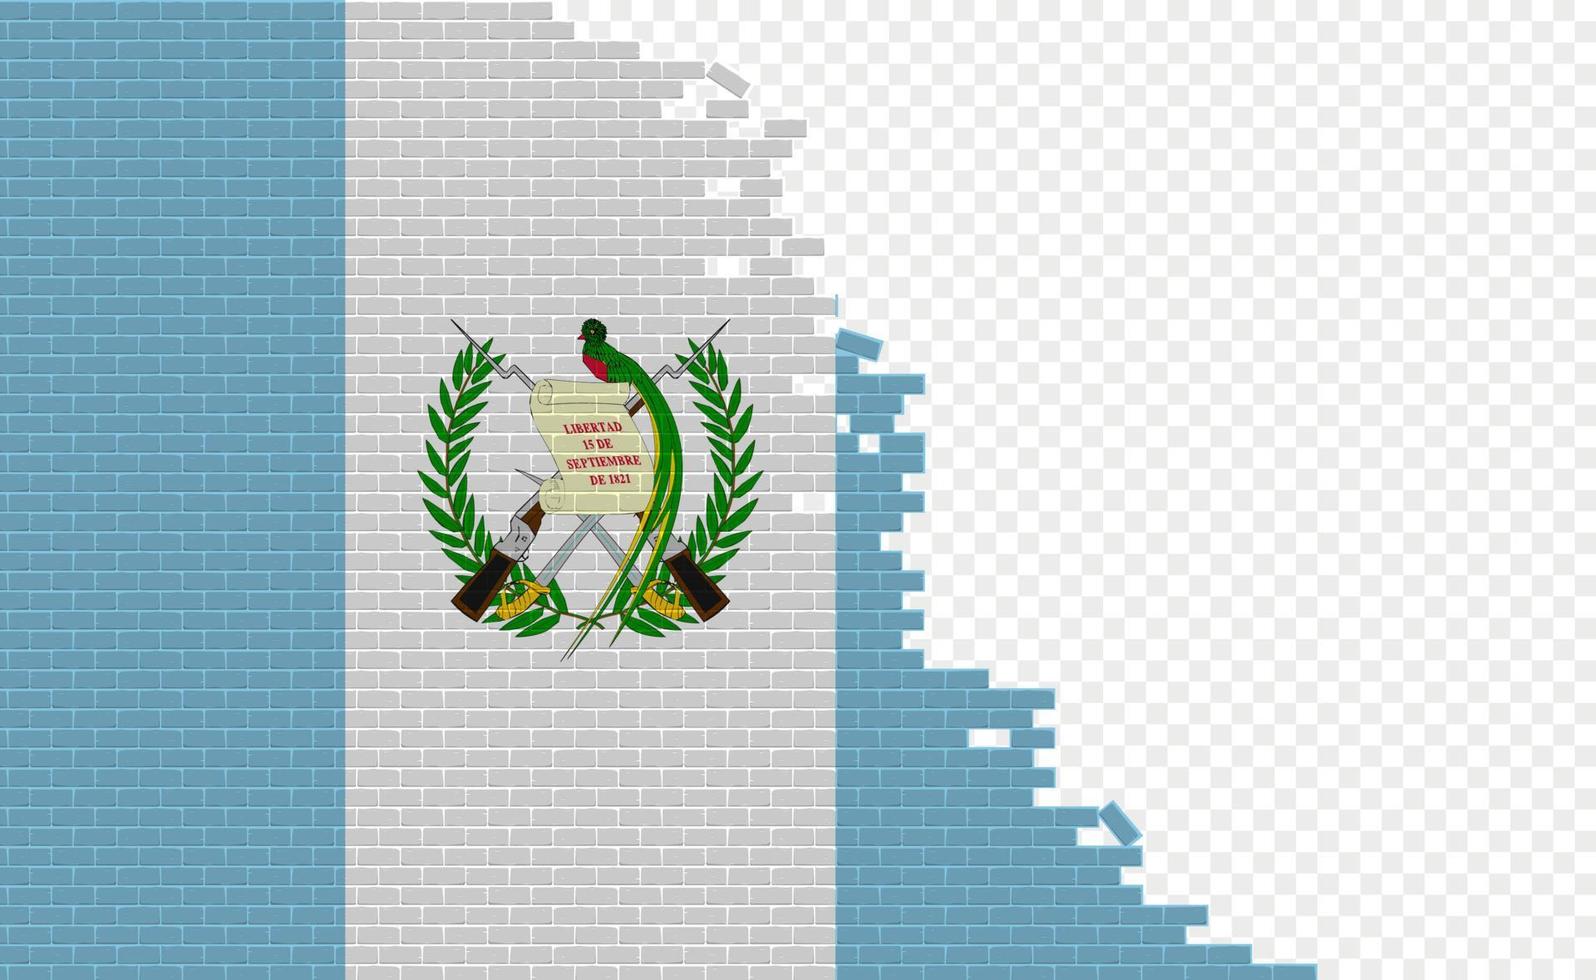 drapeau du guatemala sur le mur de briques cassées. champ de drapeau vide d'un autre pays. comparaison de pays. édition facile et vecteur en groupes.